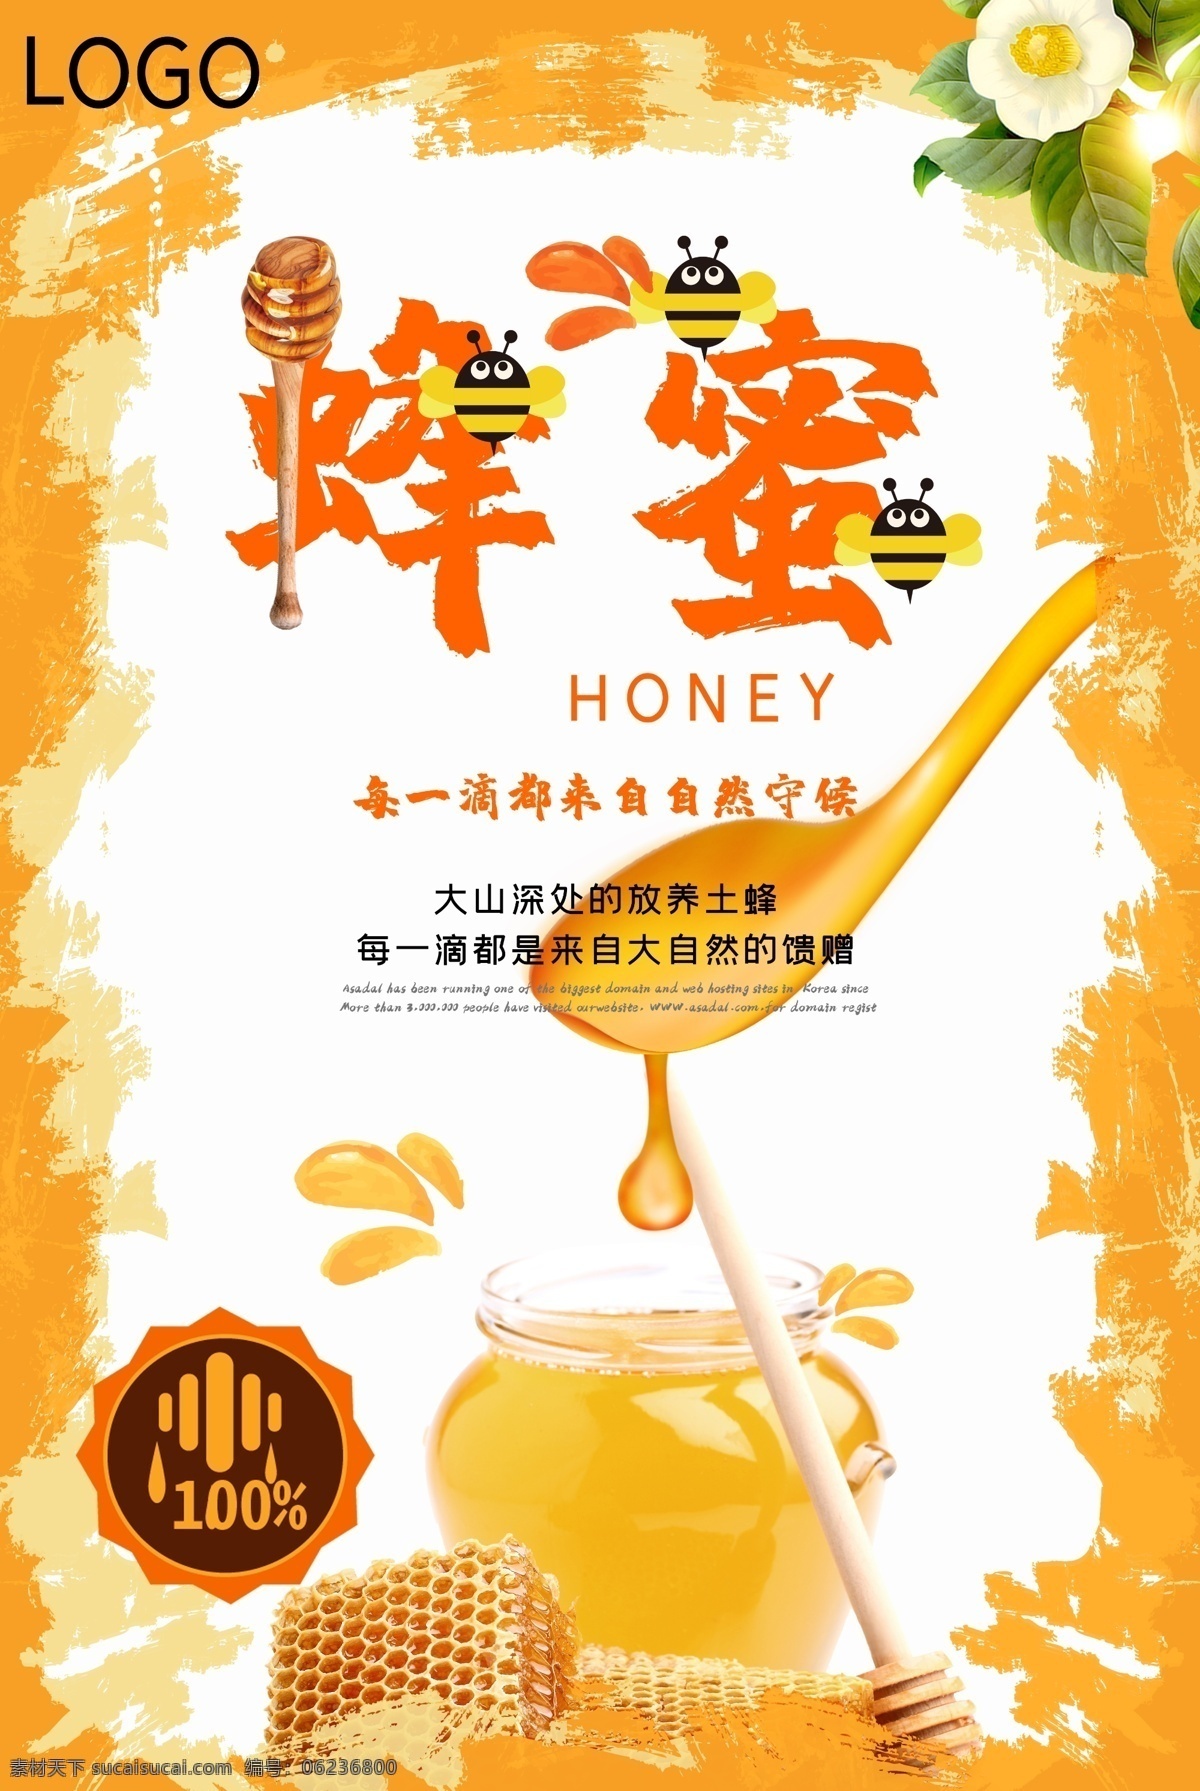 蜂蜜海报 蜂蜜展板 蜂蜜广告 蜂蜜宣传 蜂蜜画册 蜂蜜模板 蜂蜜制作 蜂蜜工艺 蜂蜜包装 蜂蜜展架 蜂蜜人物 蜂蜜插画 蜂蜜卡通 蜂蜜文化 蜂蜜图片 蜂蜜养殖 蜂蜜设计 蜂蜜产品 蜂蜜礼品盒 蜂蜜外盒包装 蜂蜜挂画 蜂蜜素材 蜜蜂文化 蜜蜂养殖